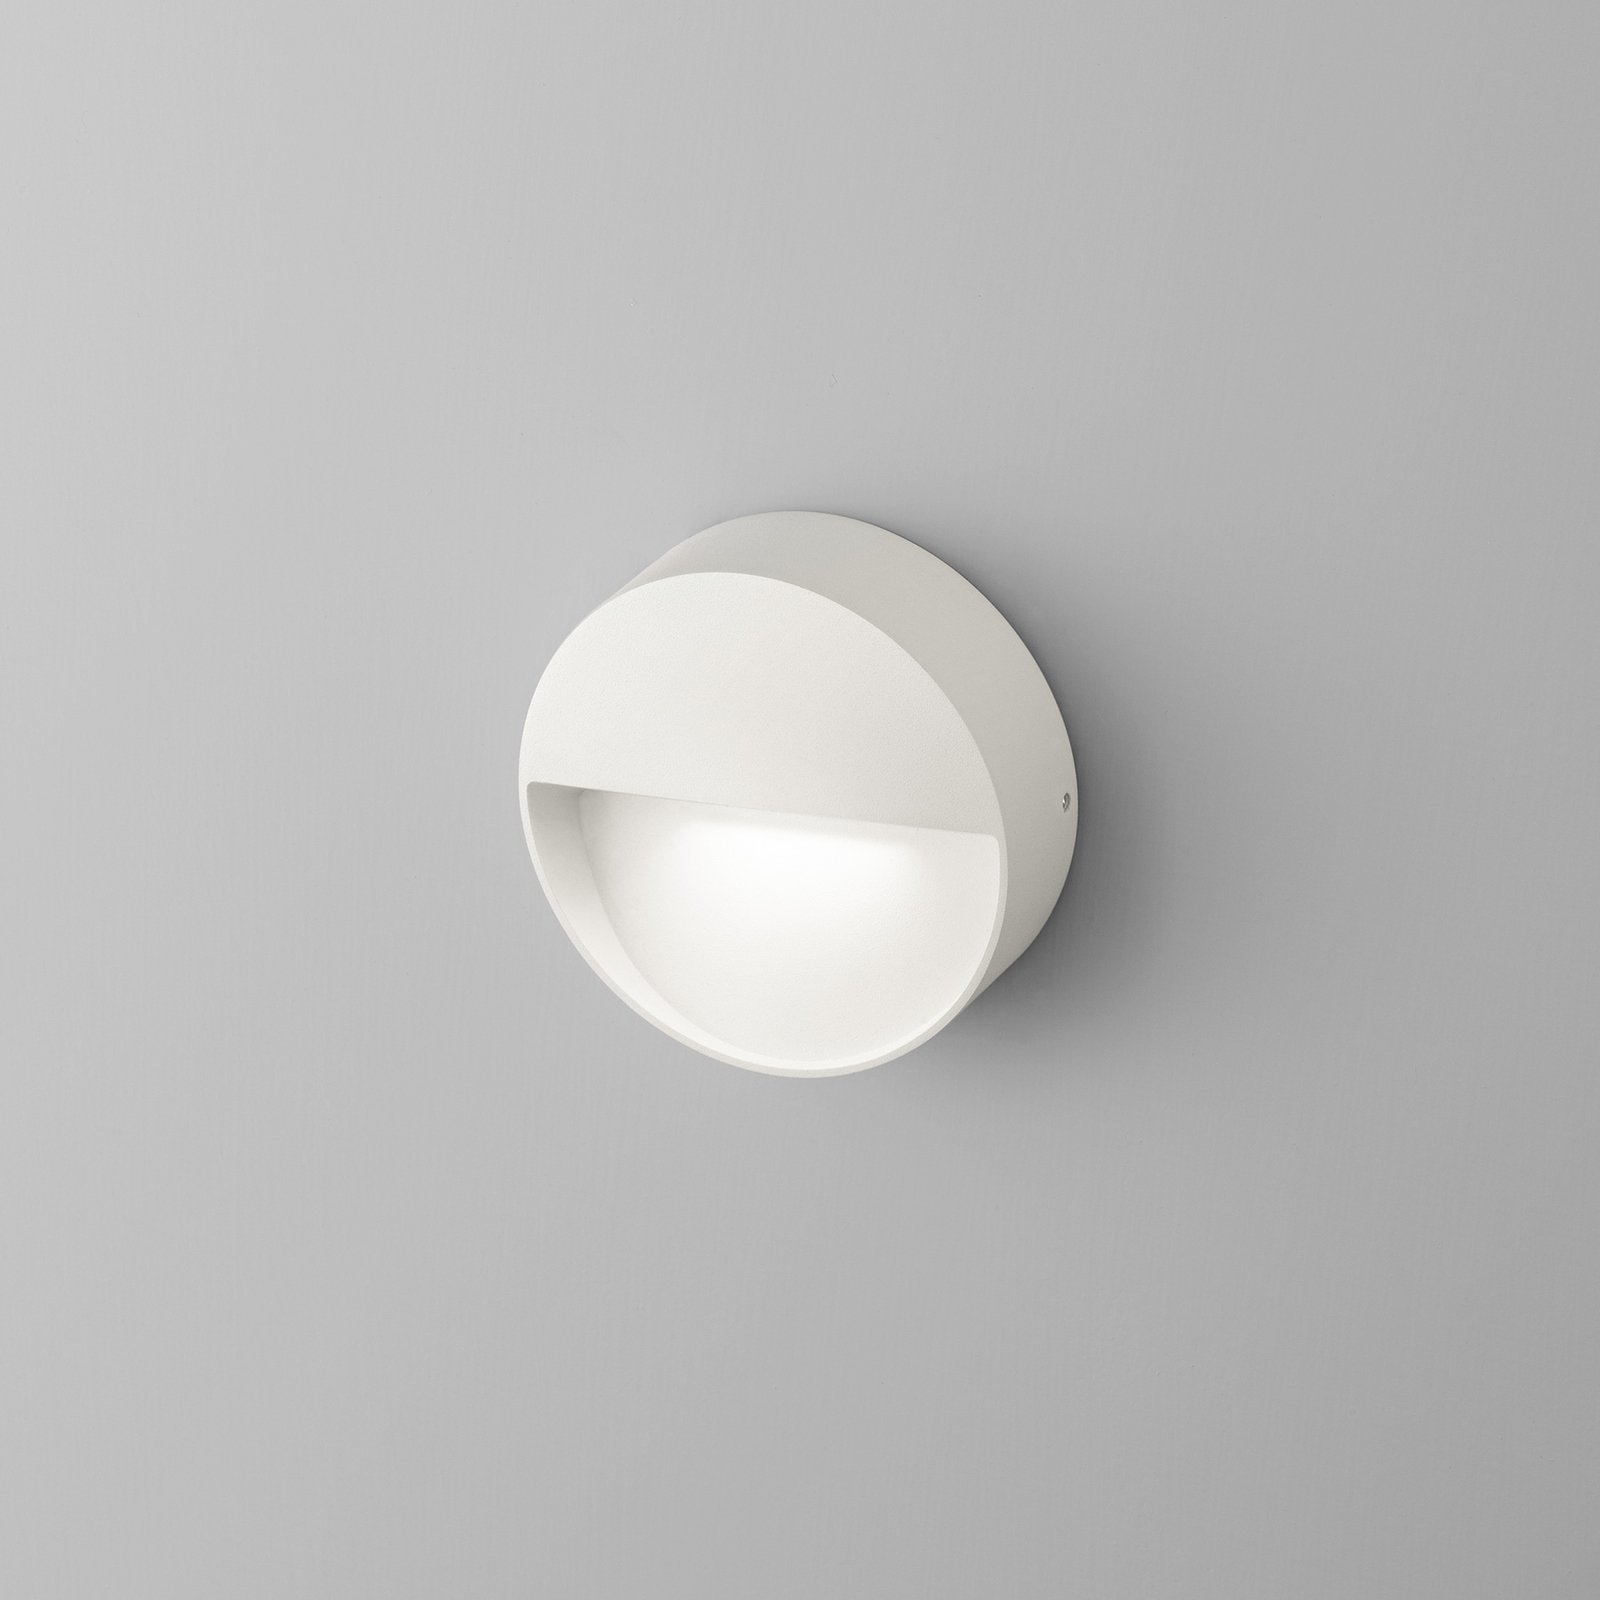 Egger Vigo applique LED con IP54, bianco